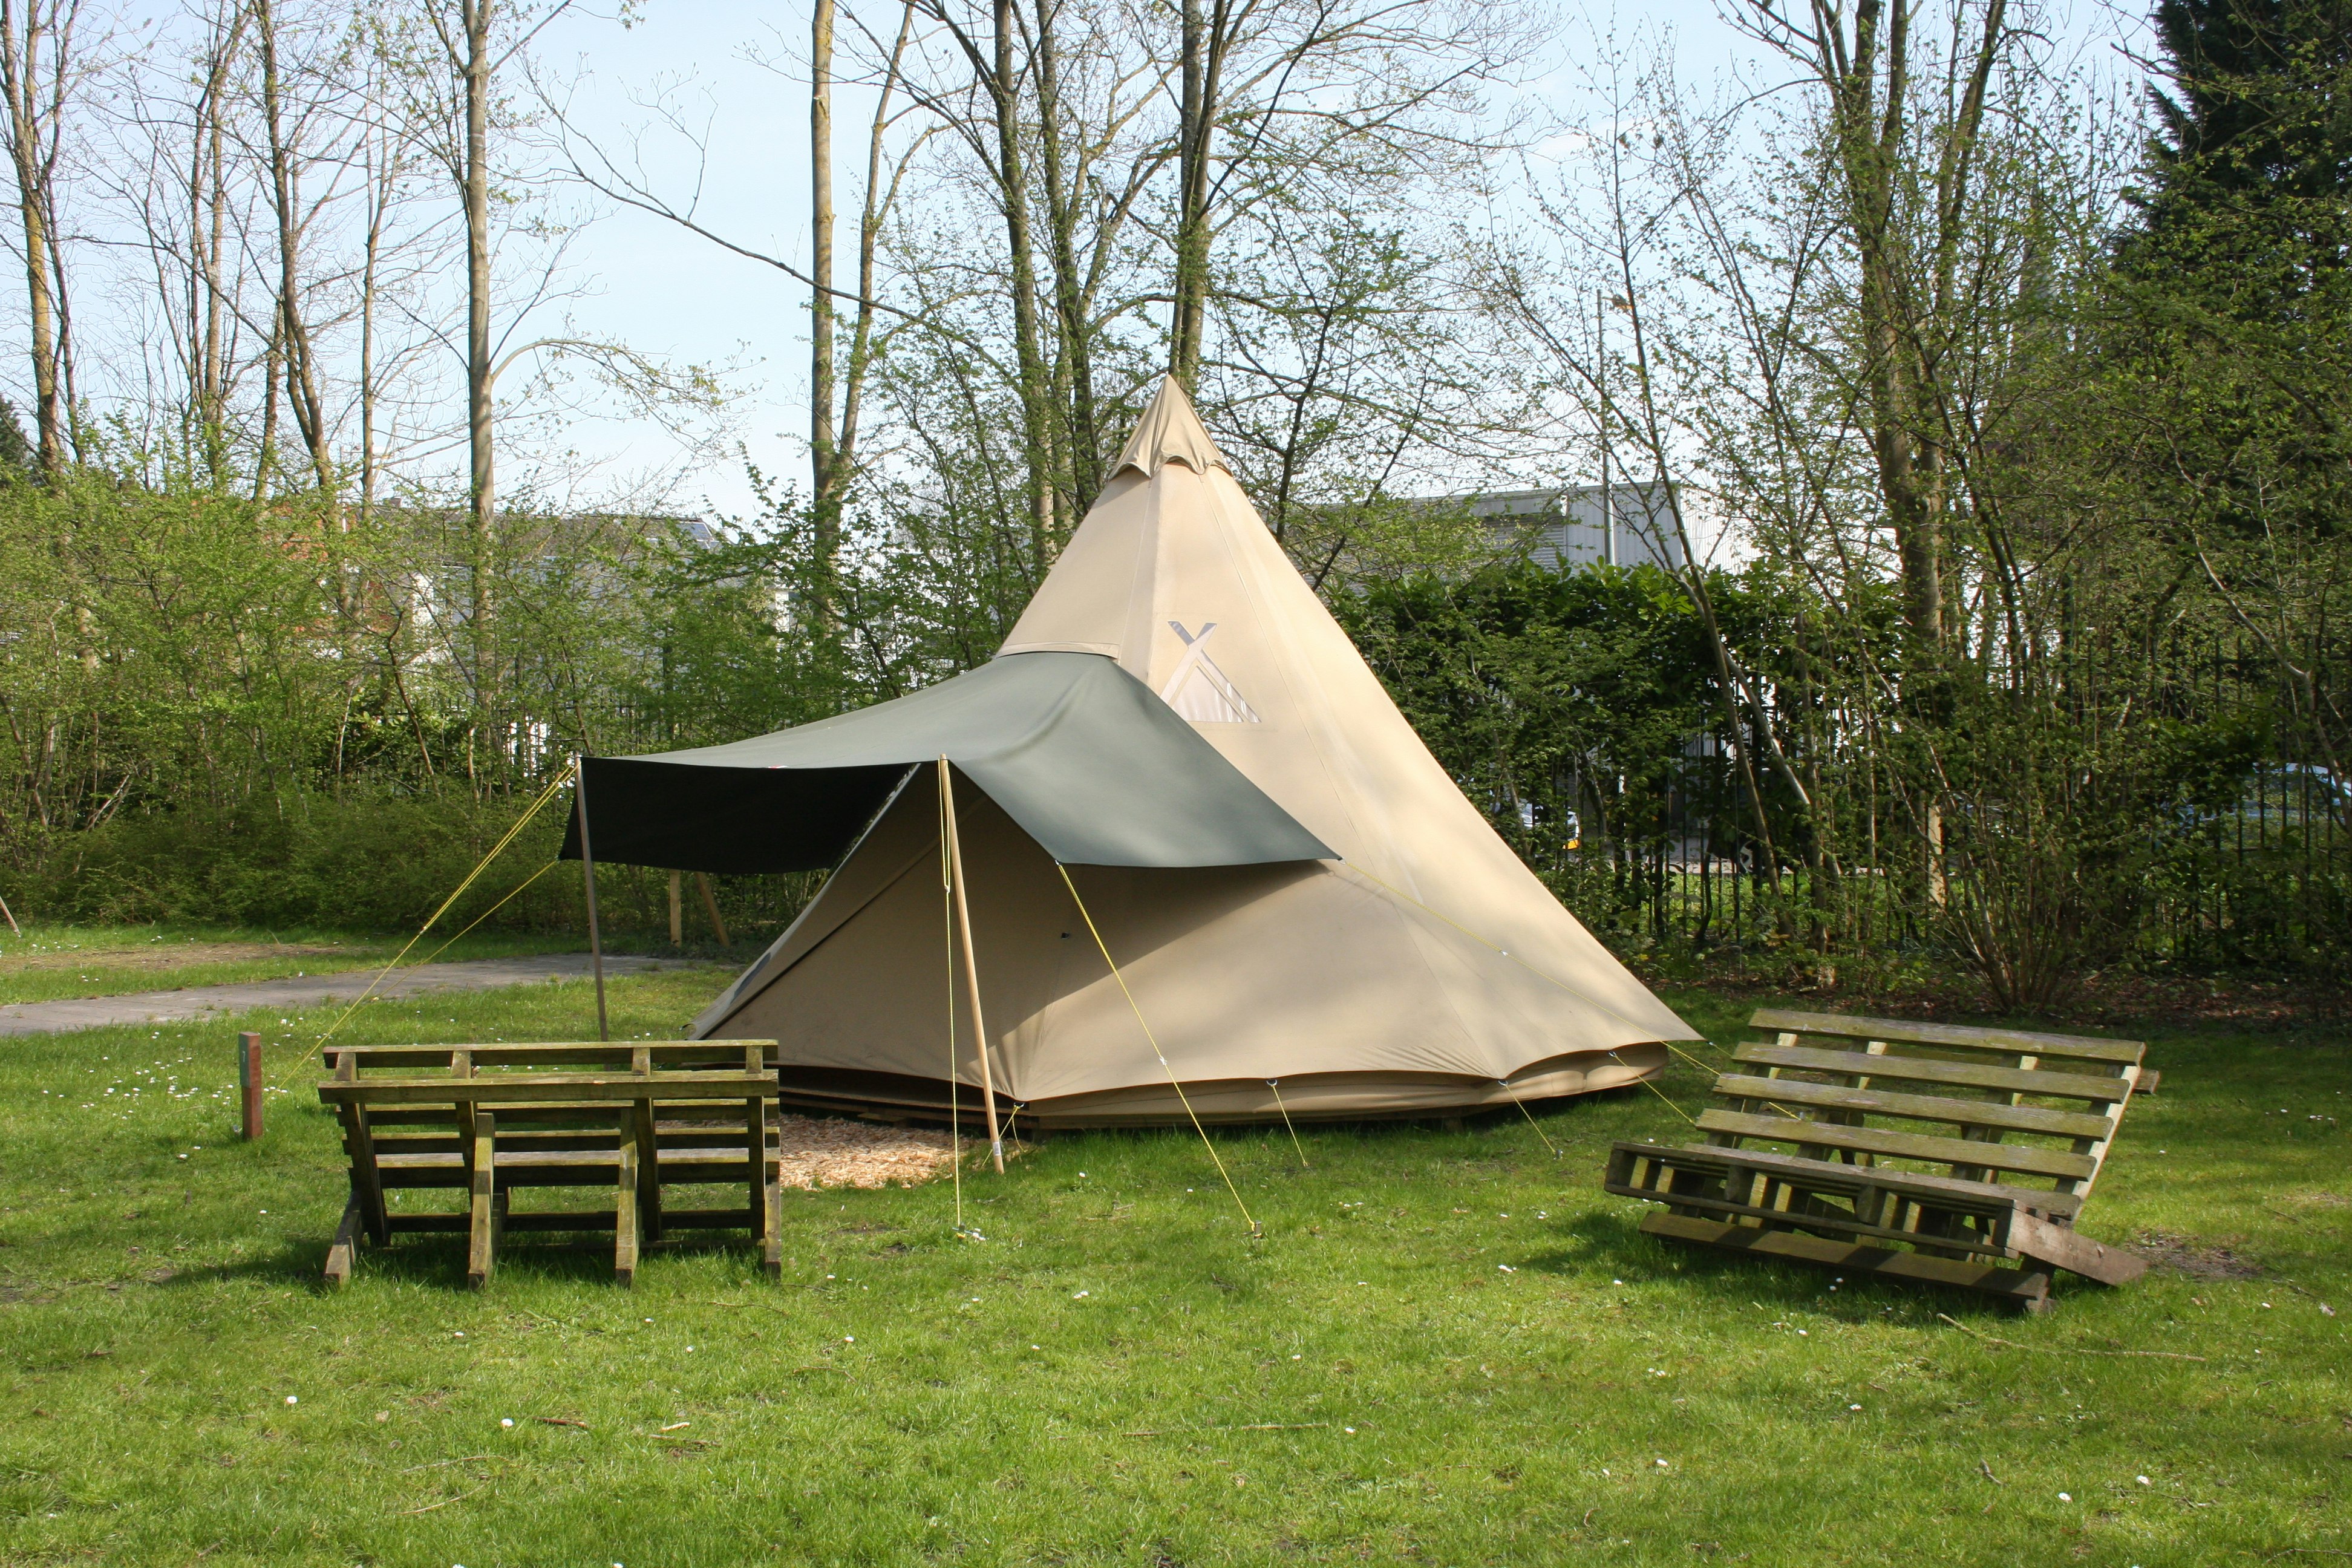 camper tour nederland